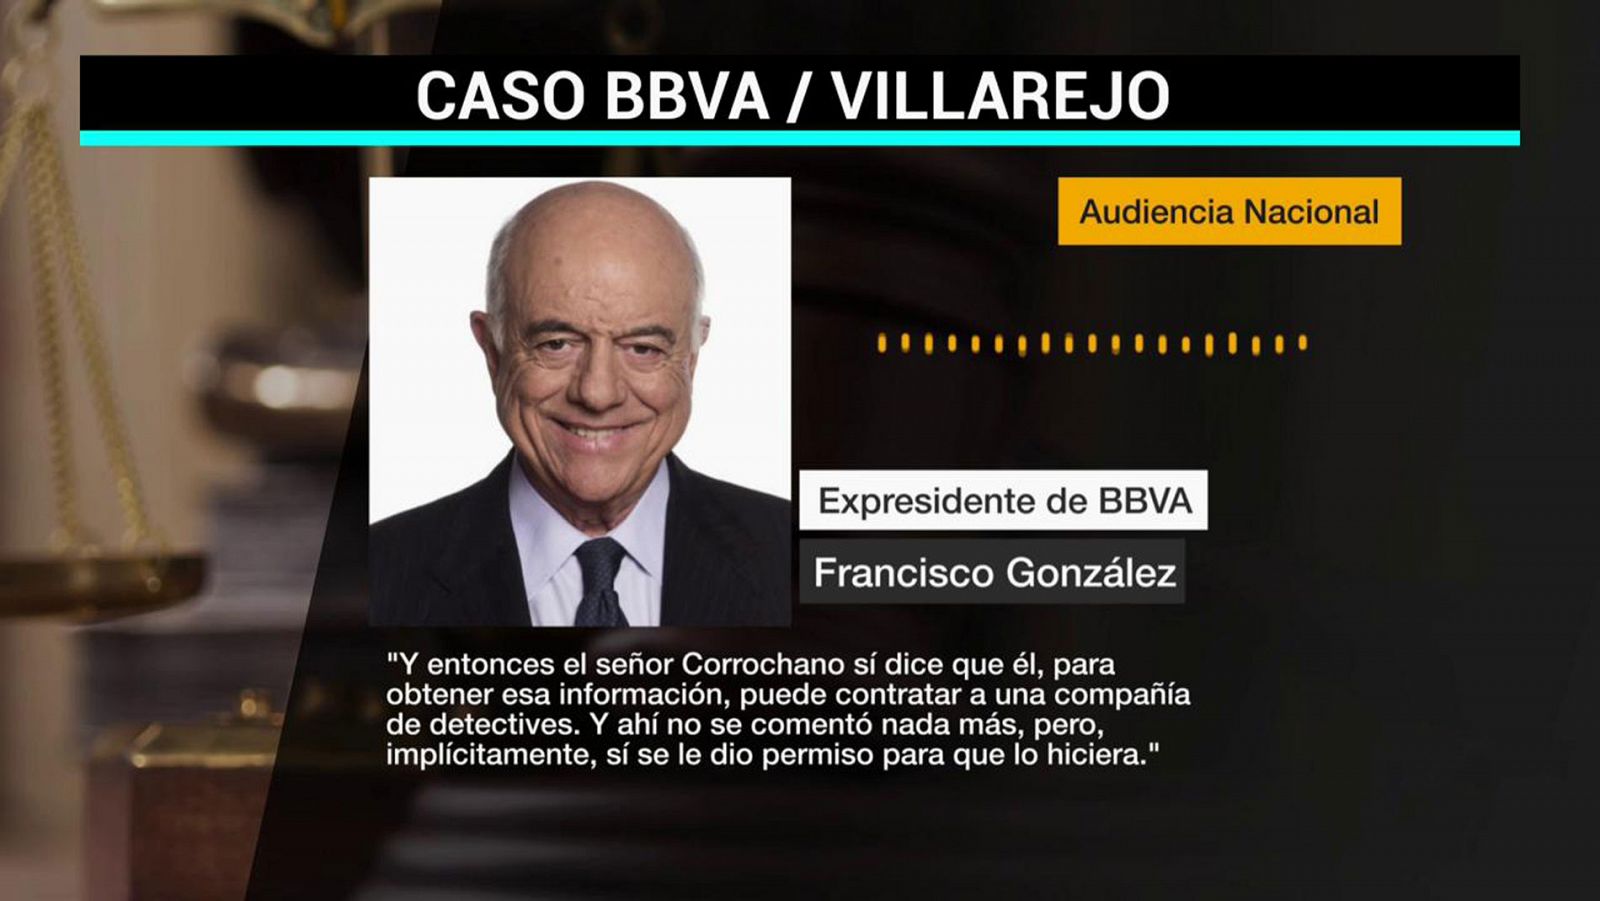 Francisco González reconoce que dio permiso "implícitamente" para la contratación de detectives en el BBVA